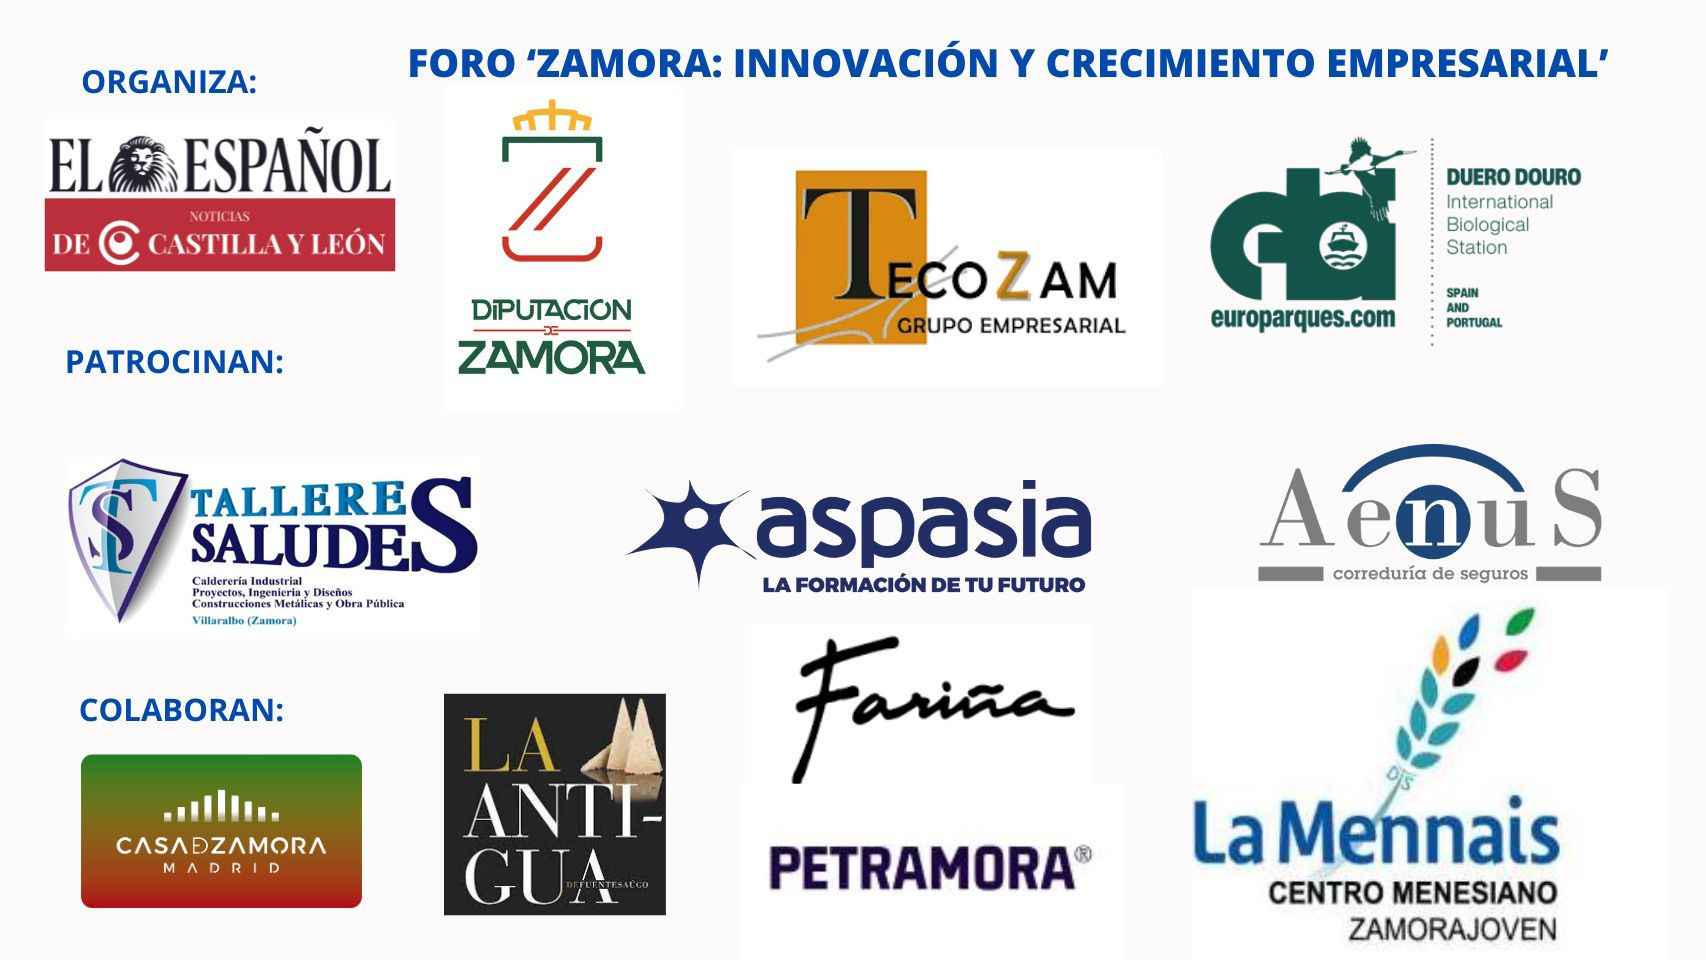 Patrocinadores del Foro Zamora: innovación y crecimiento empresarial, organizado por EL ESPAÑOL de Castilla y León.